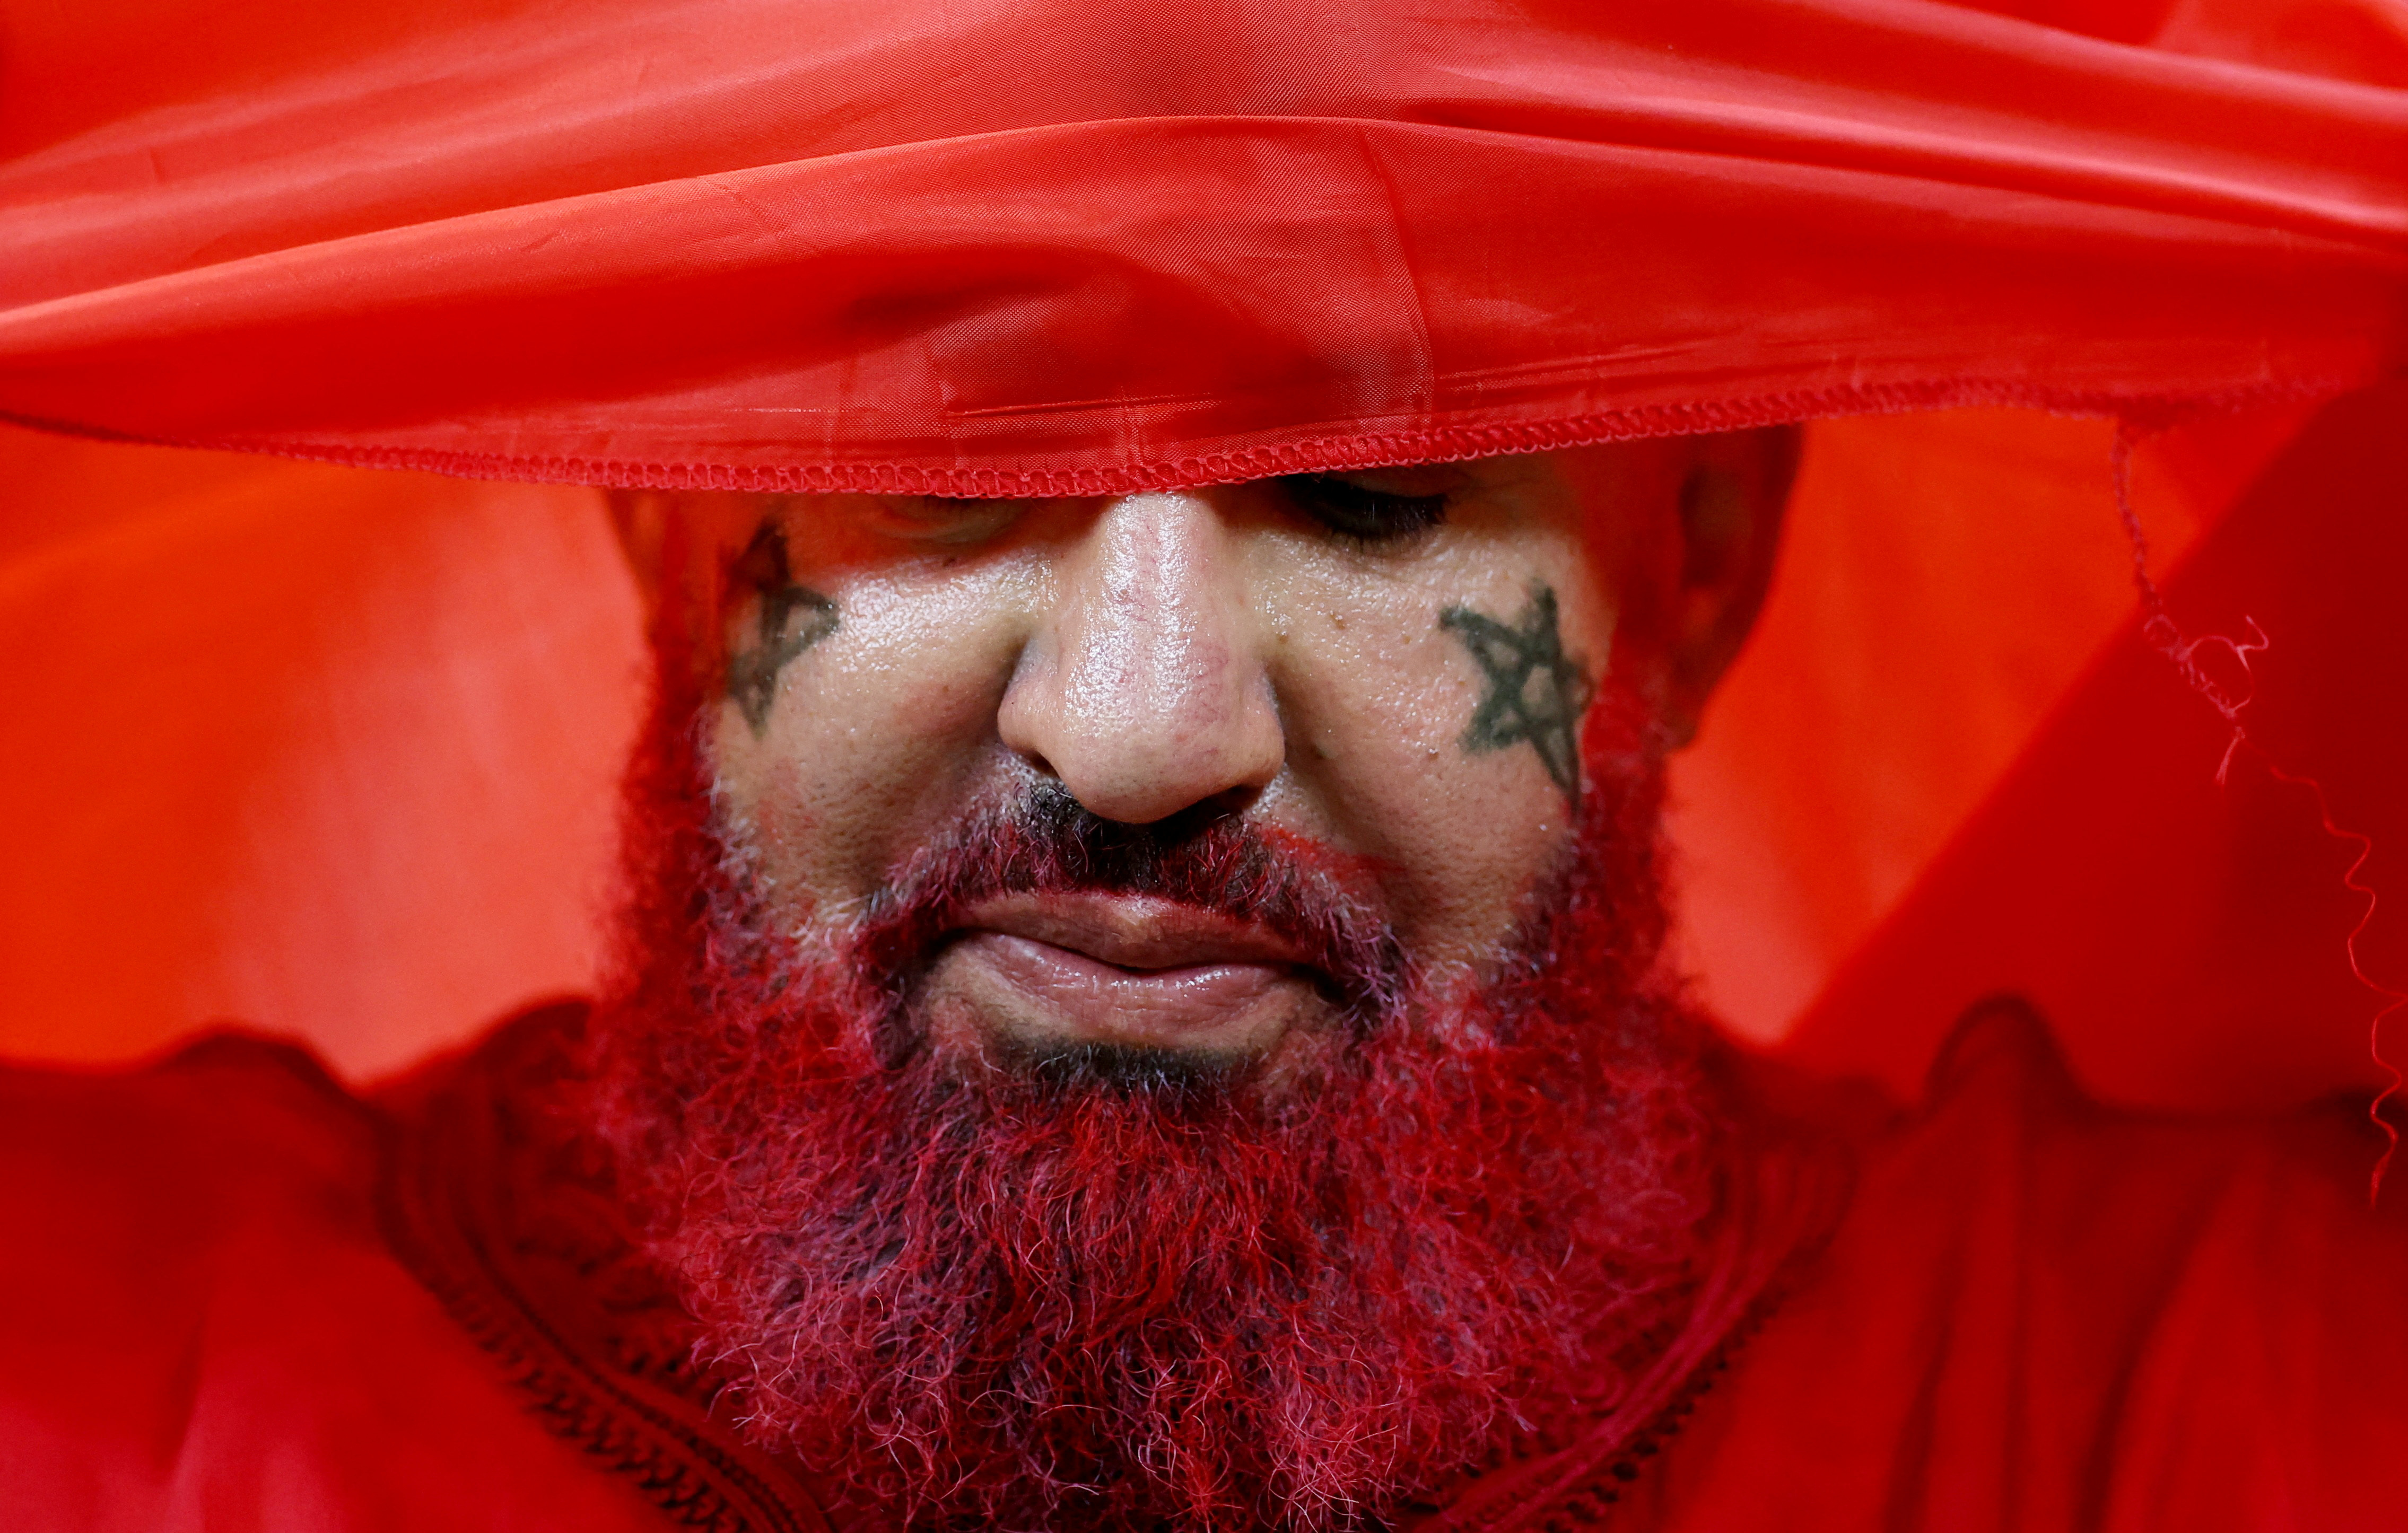 El dolor de un simpatizante marroquí tras la eliminación en semifinales de la Copa del Mundo (REUTERS/Carl Recine)